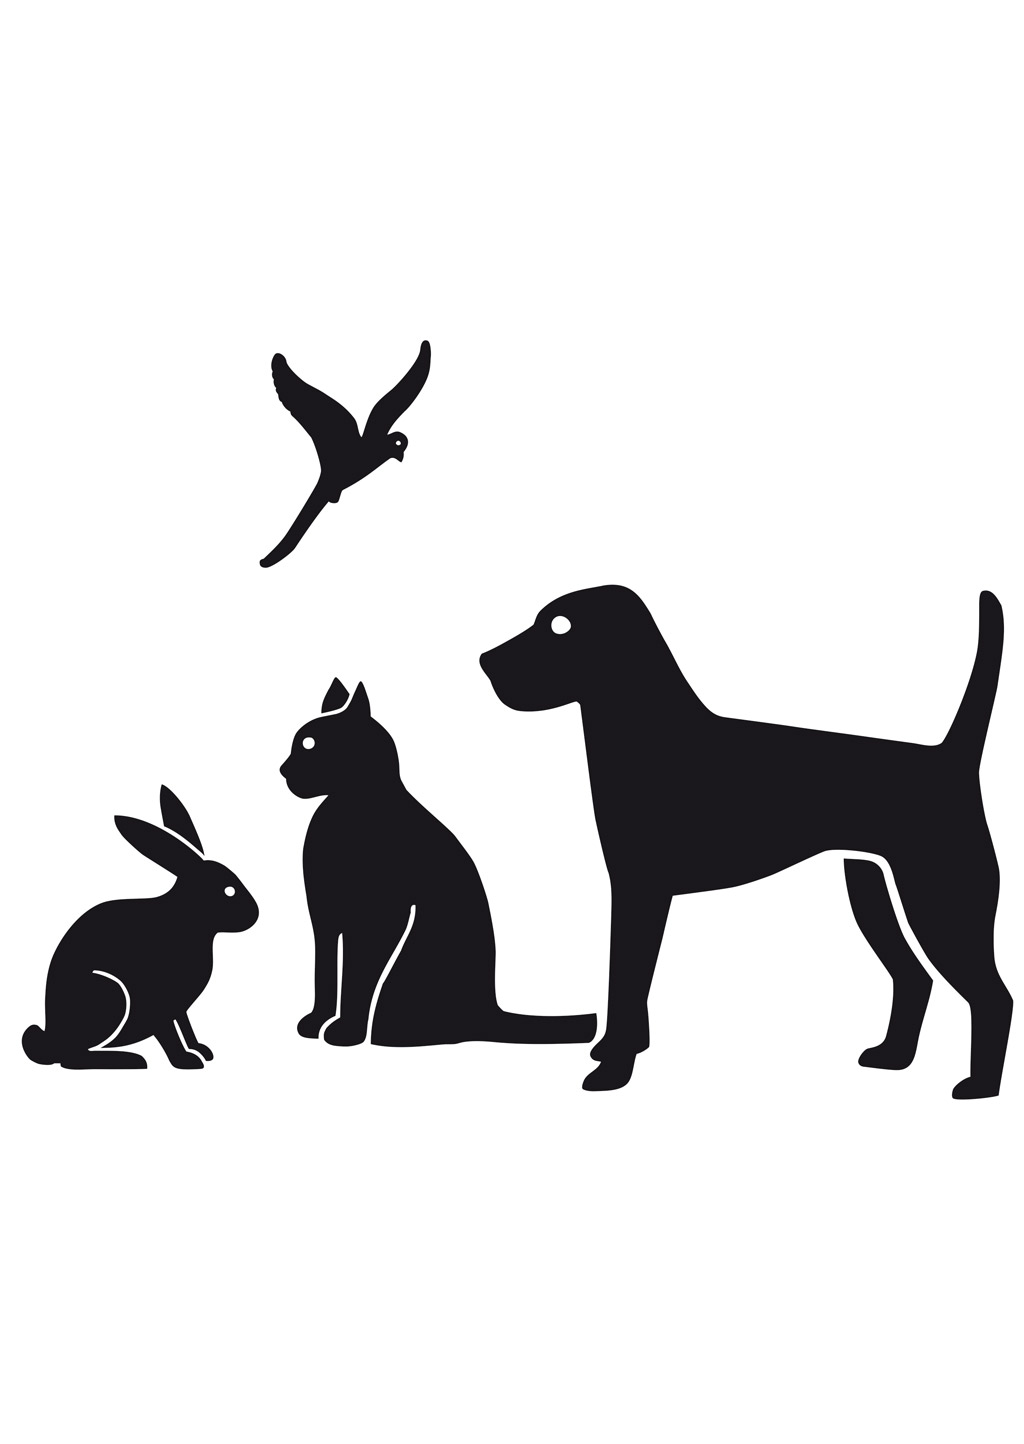 Motiv 5 (Hund, Katze, Vogel, Kaninchen)